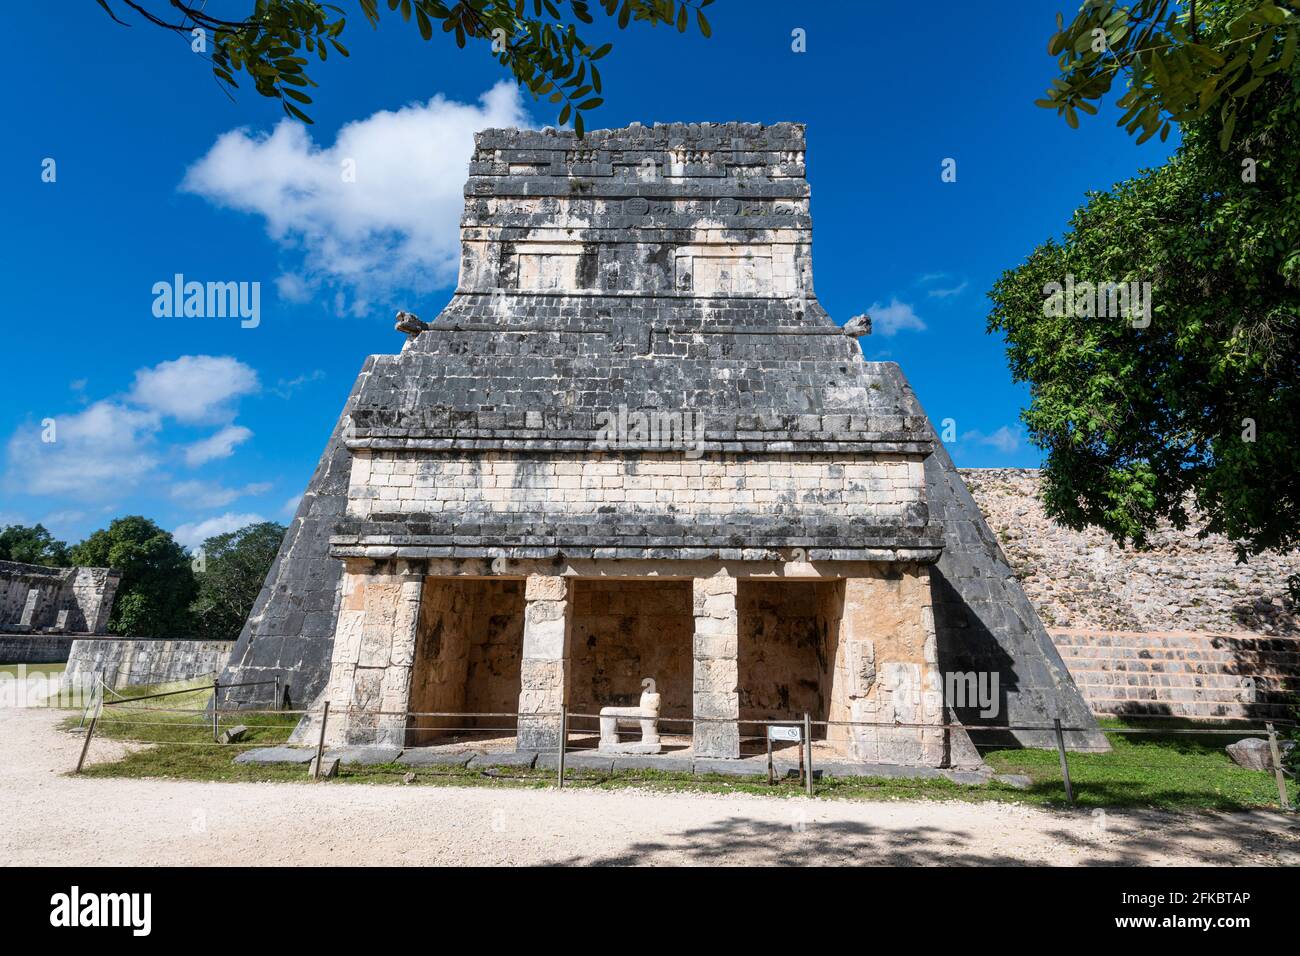 Pre-Columbian city, Chichen Itza, UNESCO World Heritage Site, Yucatan, Mexico, North America Stock Photo